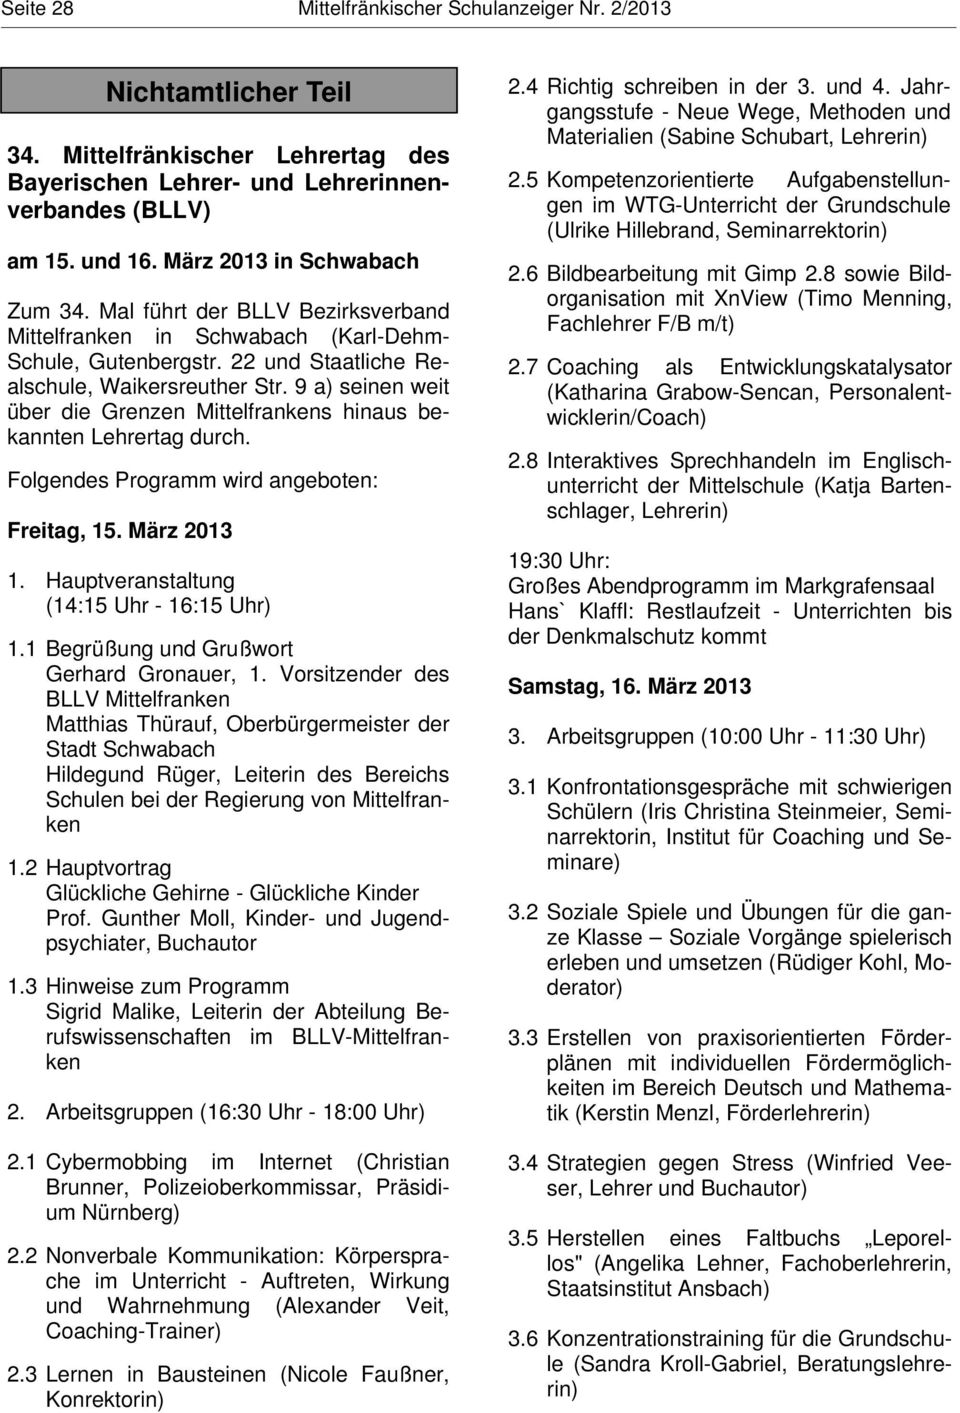 9 a) seinen weit über die Grenzen Mittelfrankens hinaus bekannten Lehrertag durch. Folgendes Programm wird angeboten: Freitag, 15. März 2013 1. Hauptveranstaltung (14:15 Uhr - 16:15 Uhr) 1.